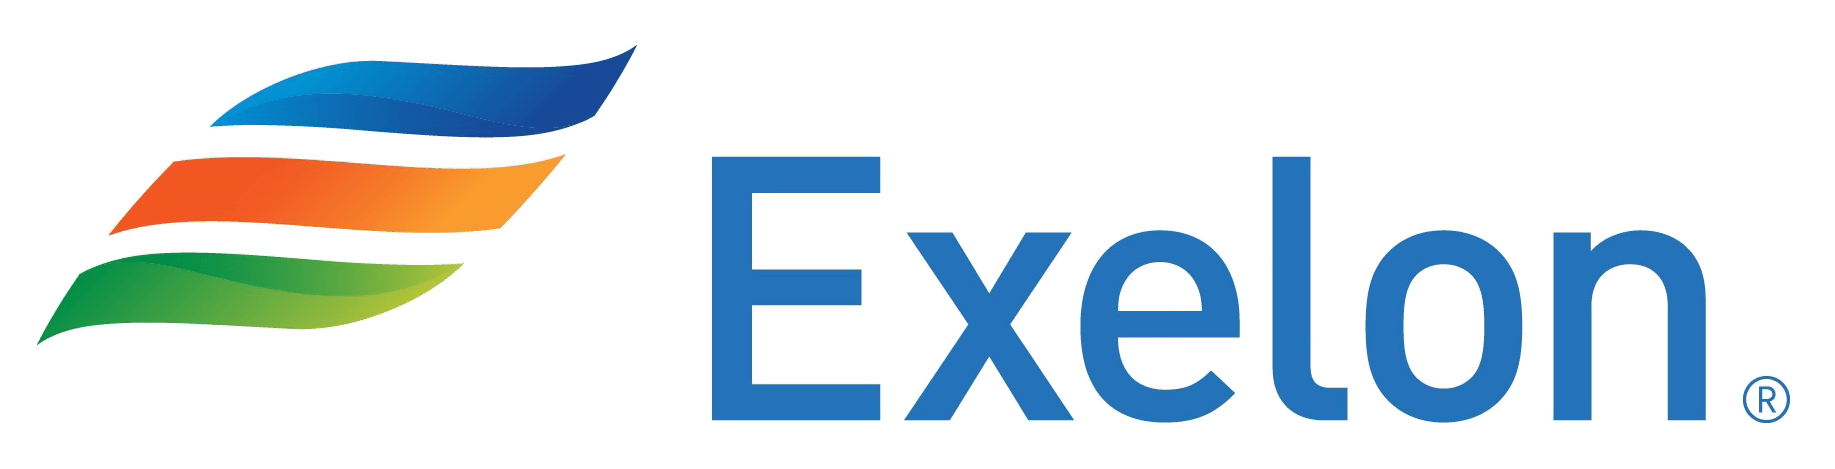 Exelon New Logo - Exelon Logos